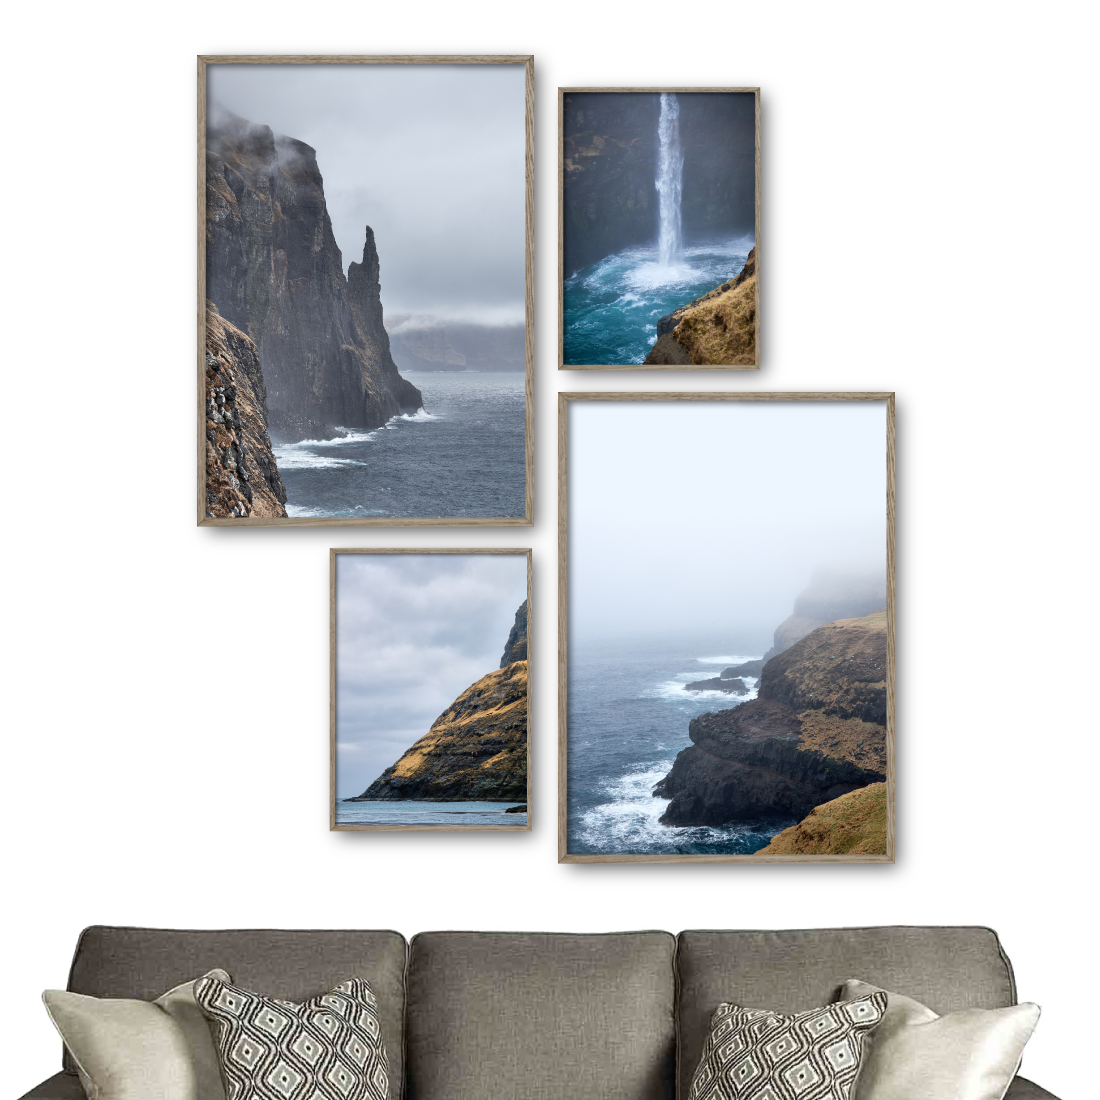 billedvæg med 4 færø plakater med udflugtsmål